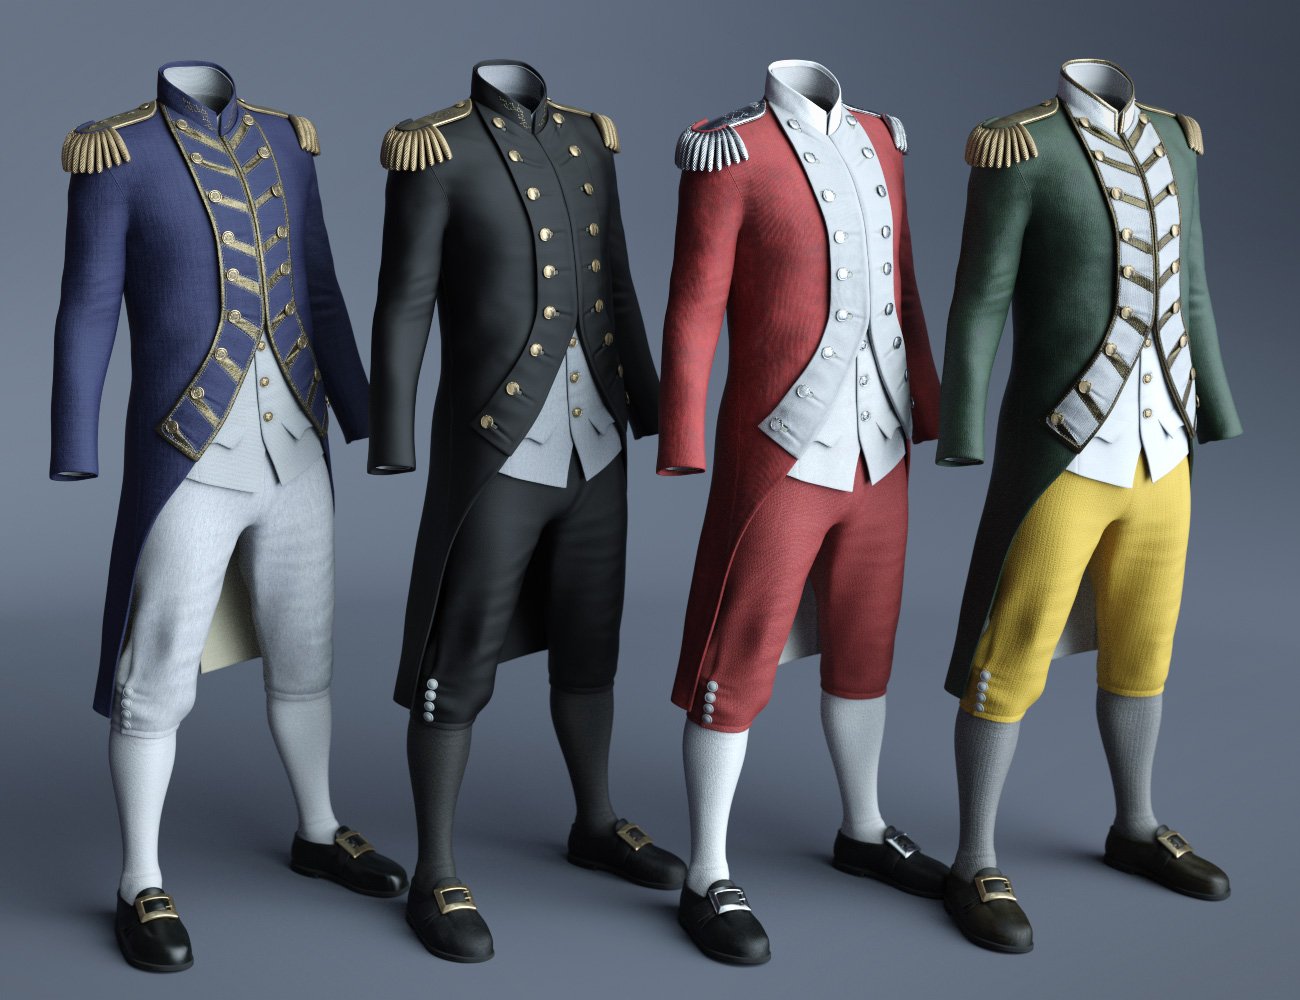 dForce Naval Uniform Textures by: Moonscape GraphicsSade, 3D Models by Daz 3D